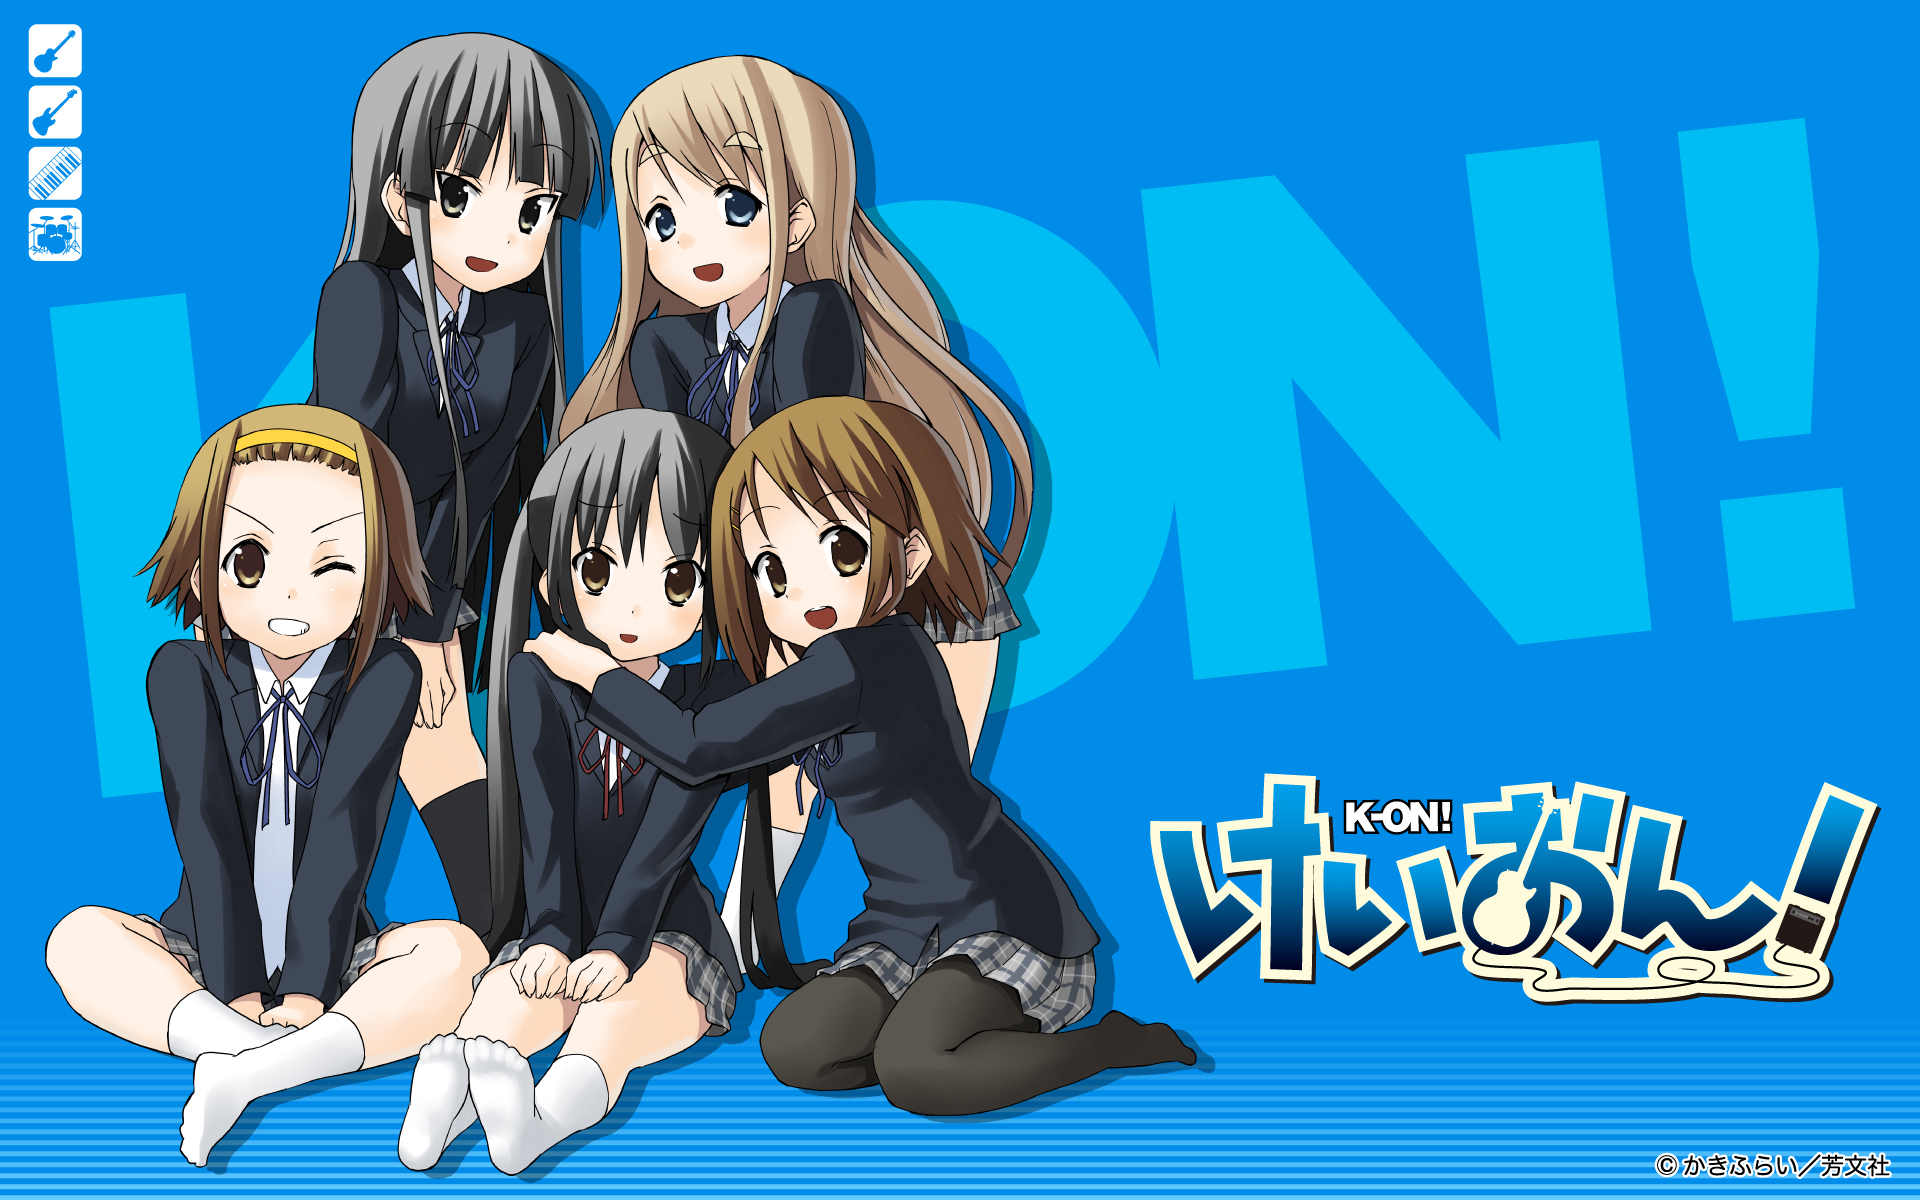 Anime band with Mio, Tsumugi, Ritsu, Azusa, and Yui.